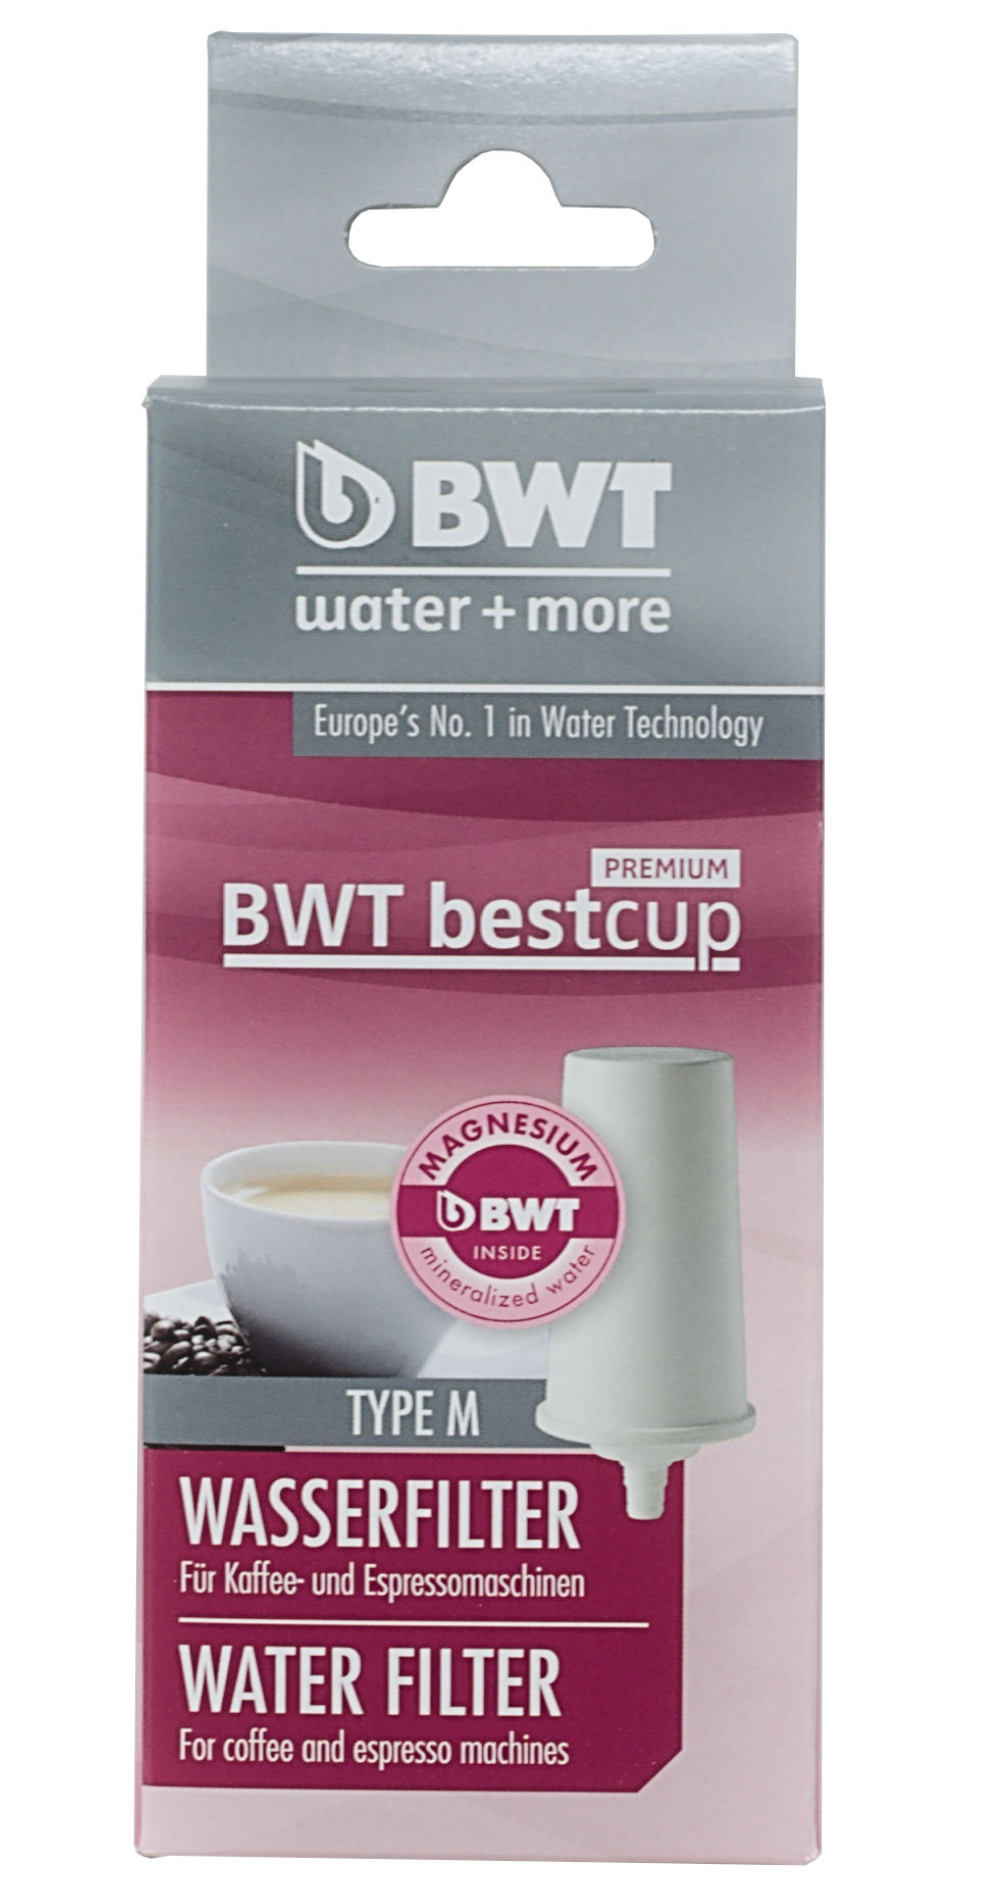 BWT Bestcup Premium Wasserfilter